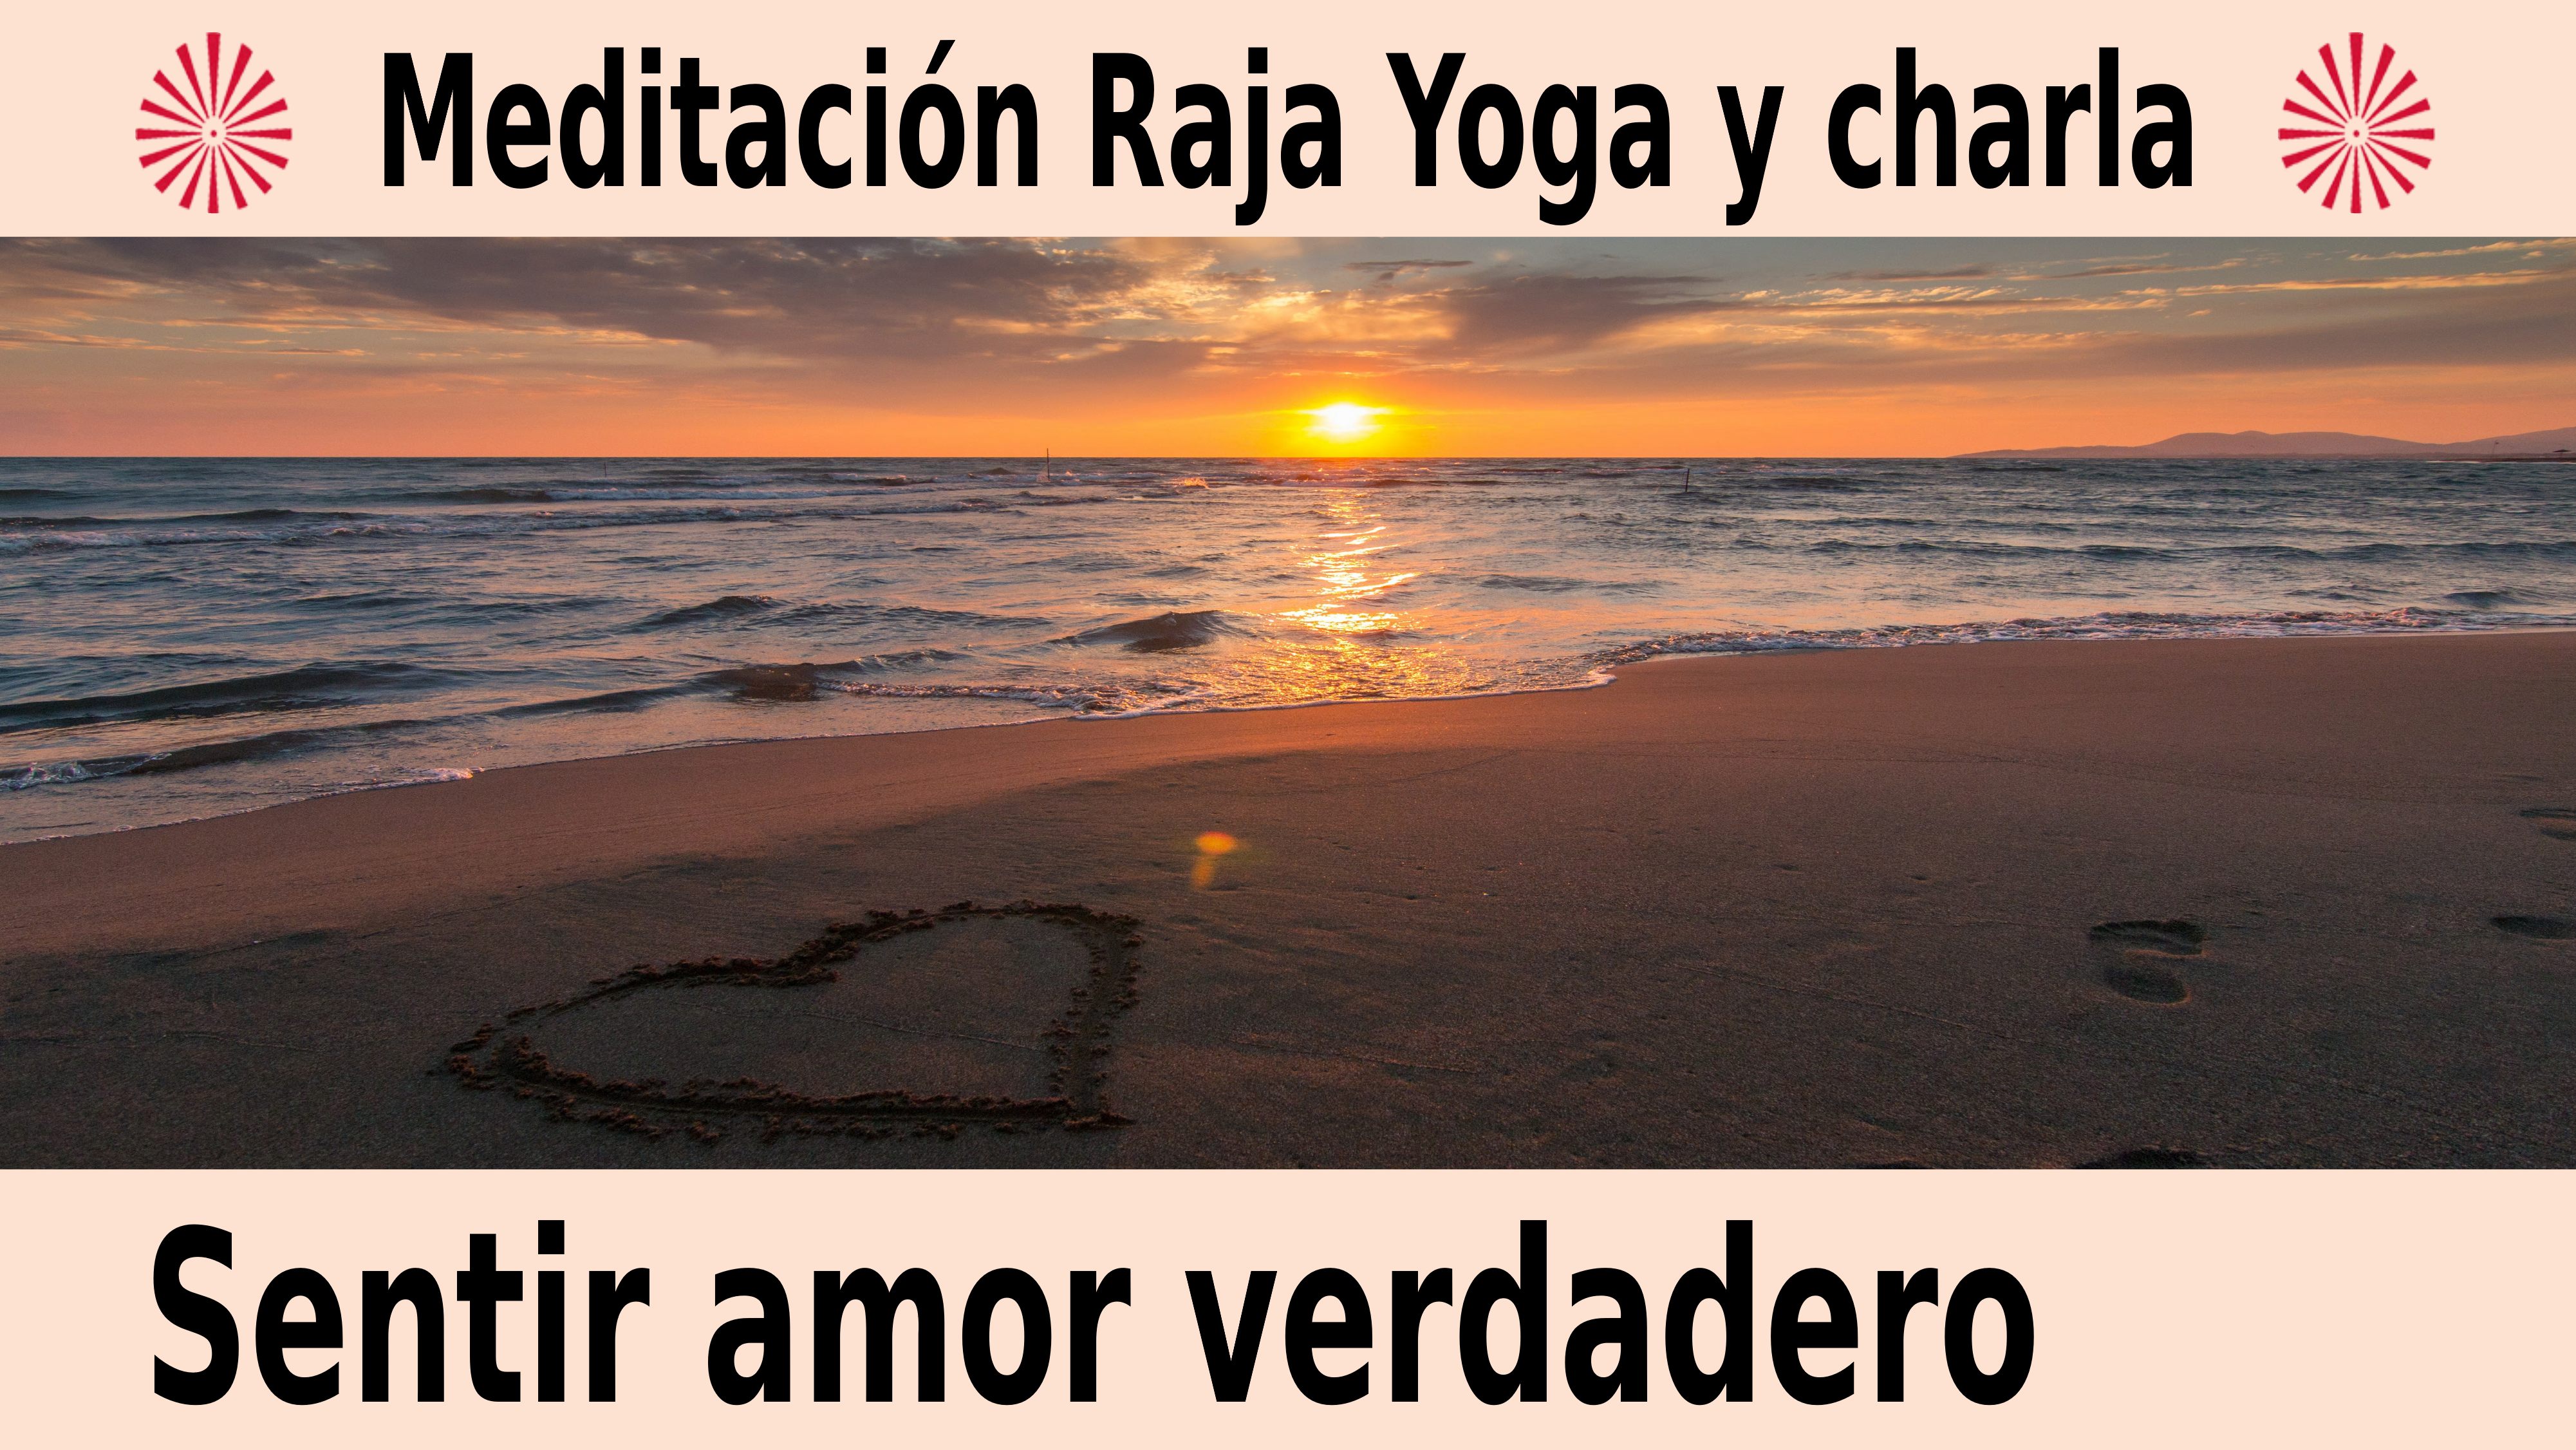 Meditación Raja Yoga y charla: Sentir amor verdadero (8 Diciembre 2020) On-line desde Canarias